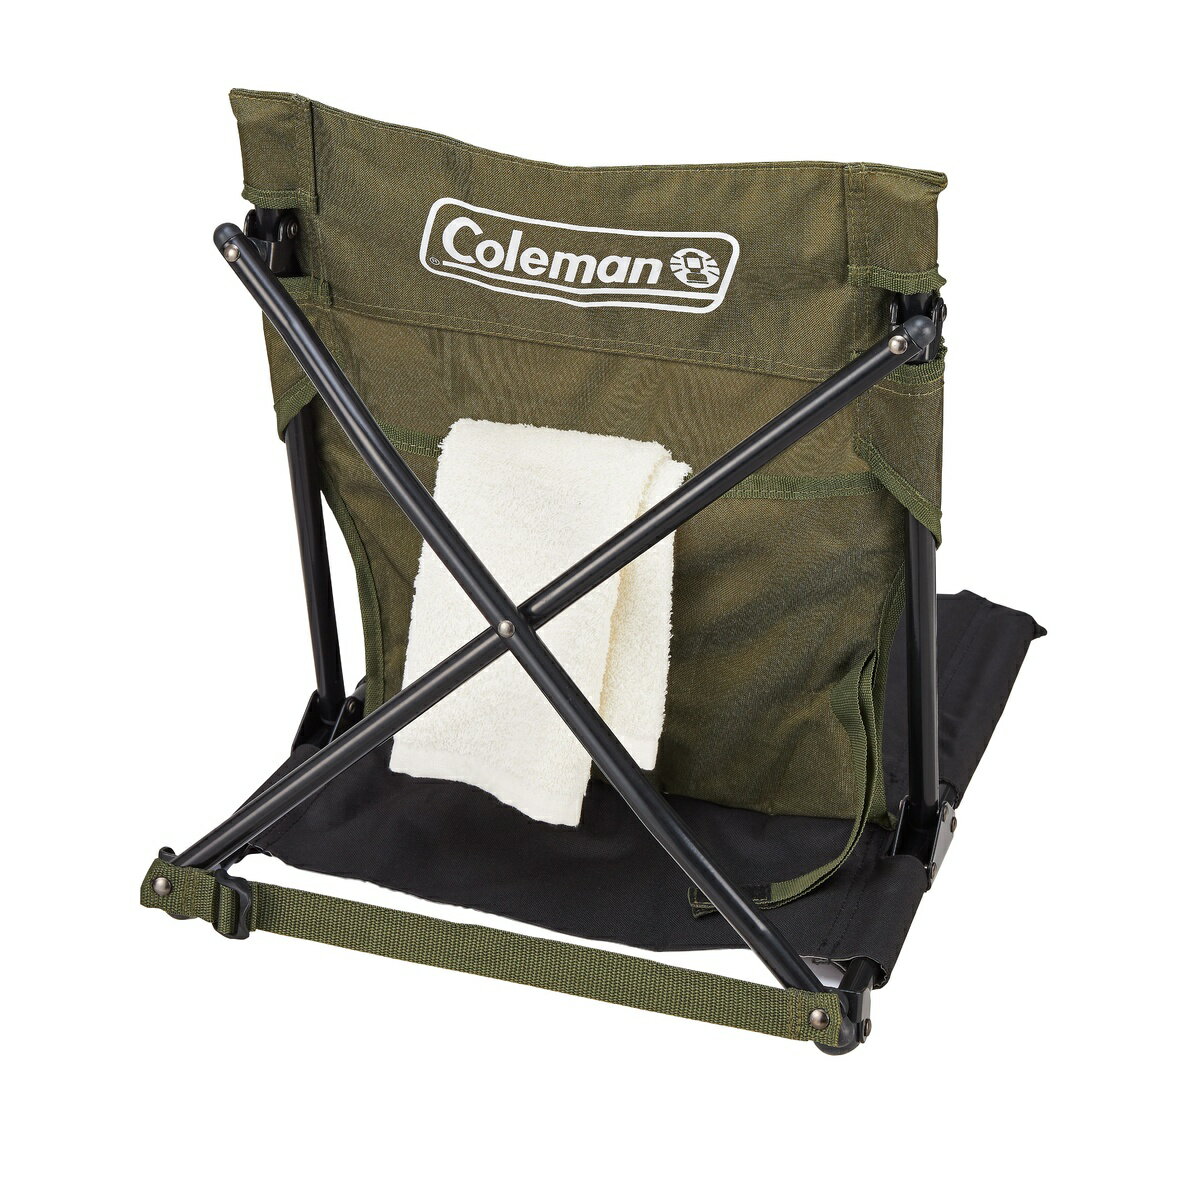 コールマン (COLEMAN) コンパクトグランドチェア(オリーブ) キャンプ用品 ファミリーチェア 椅子 2000038838